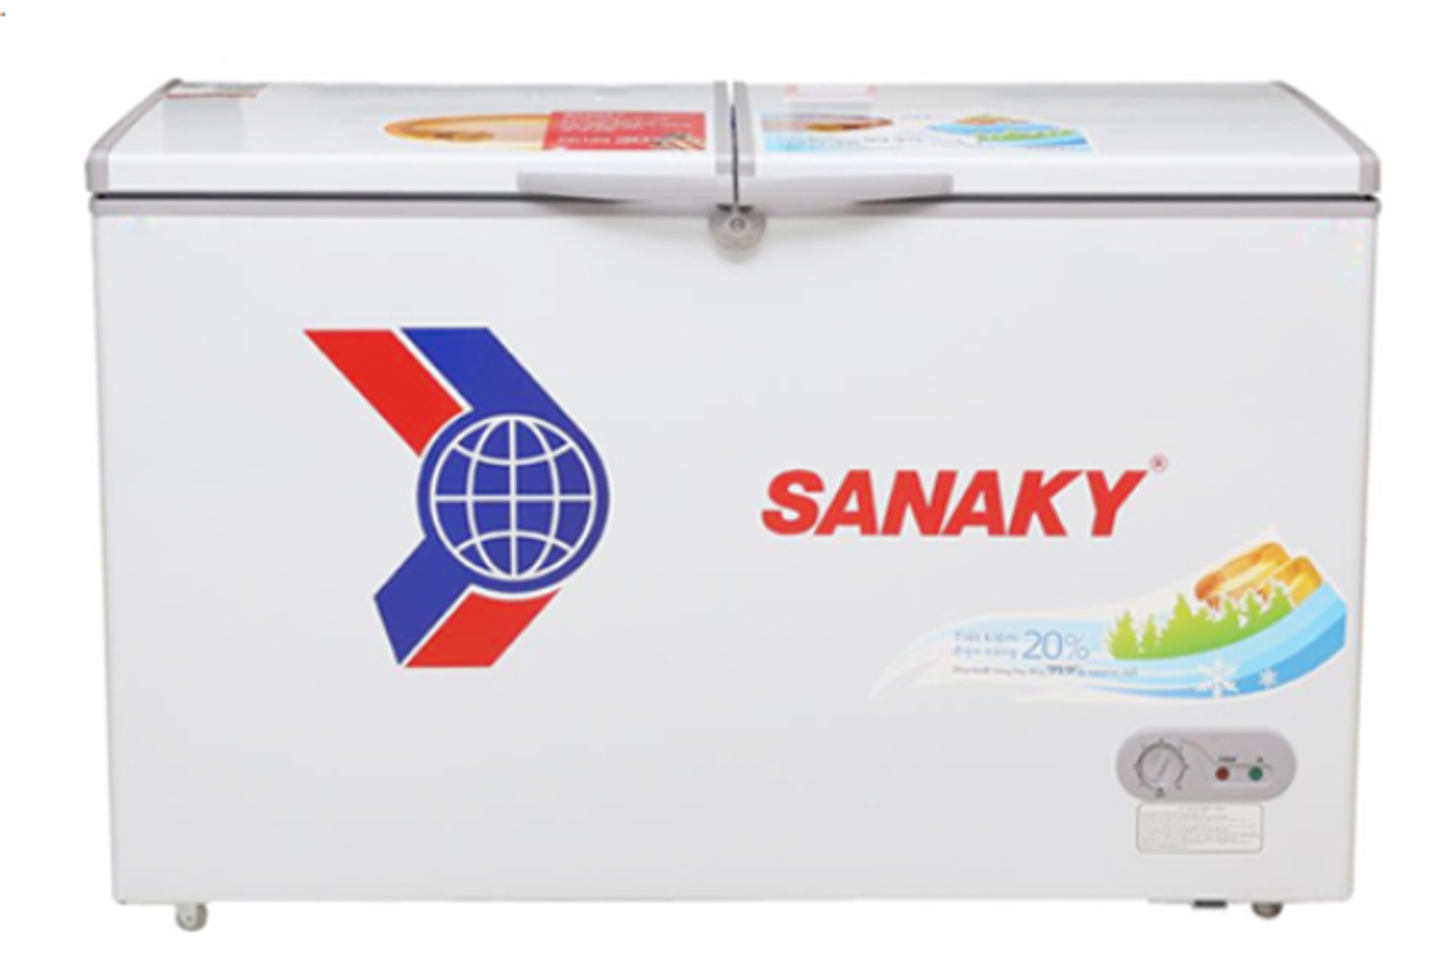 Tủ đông Sanaky 280 lít VH-2899A1